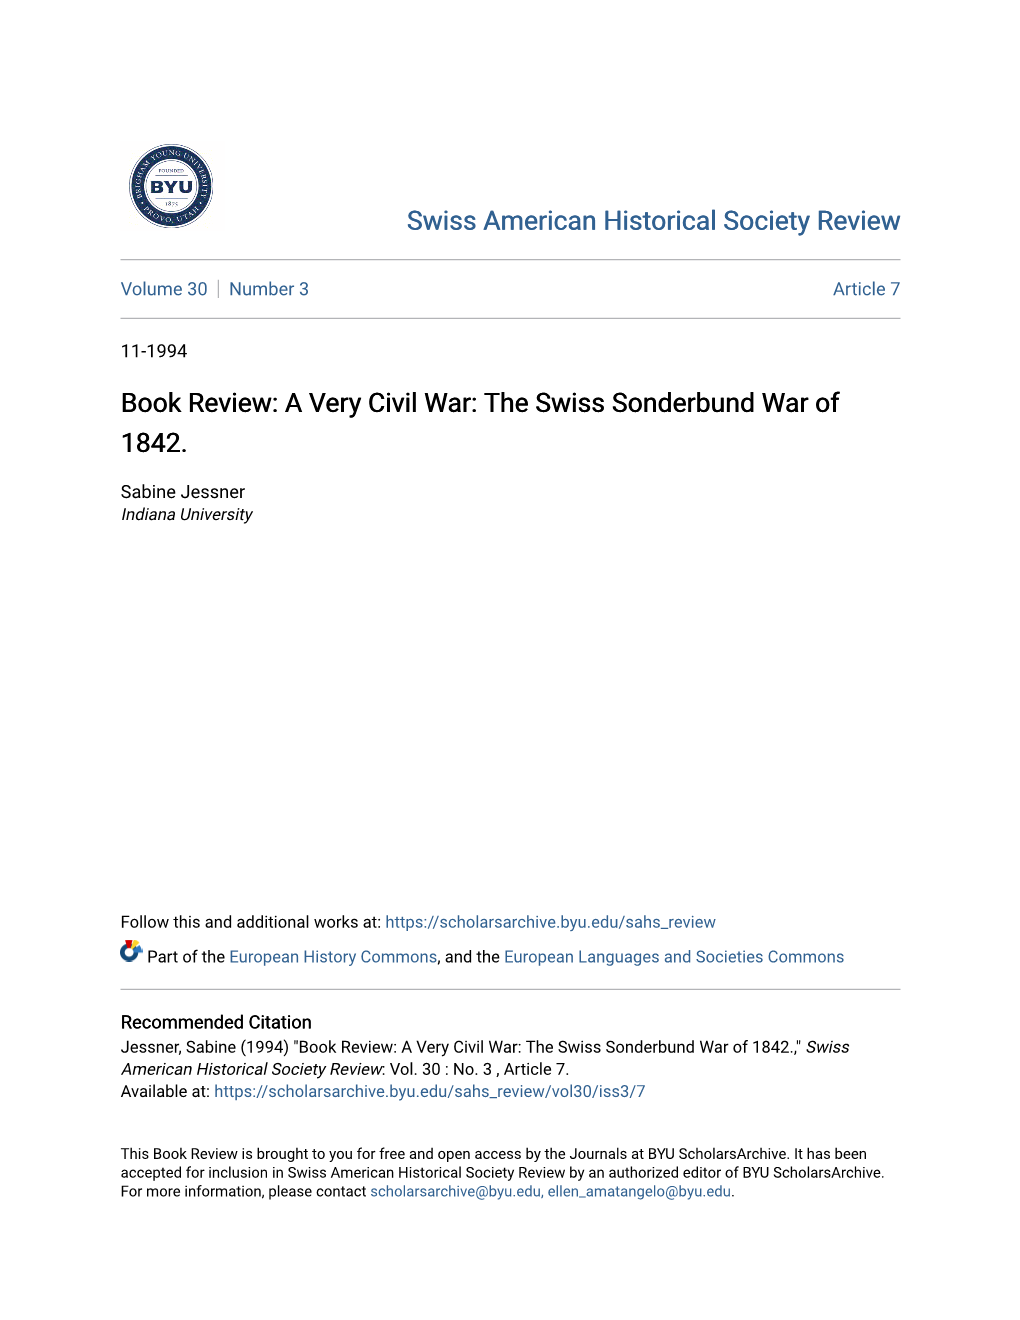 Book Review: a Very Civil War: 1'He Swiss Sonderbund War of 1842